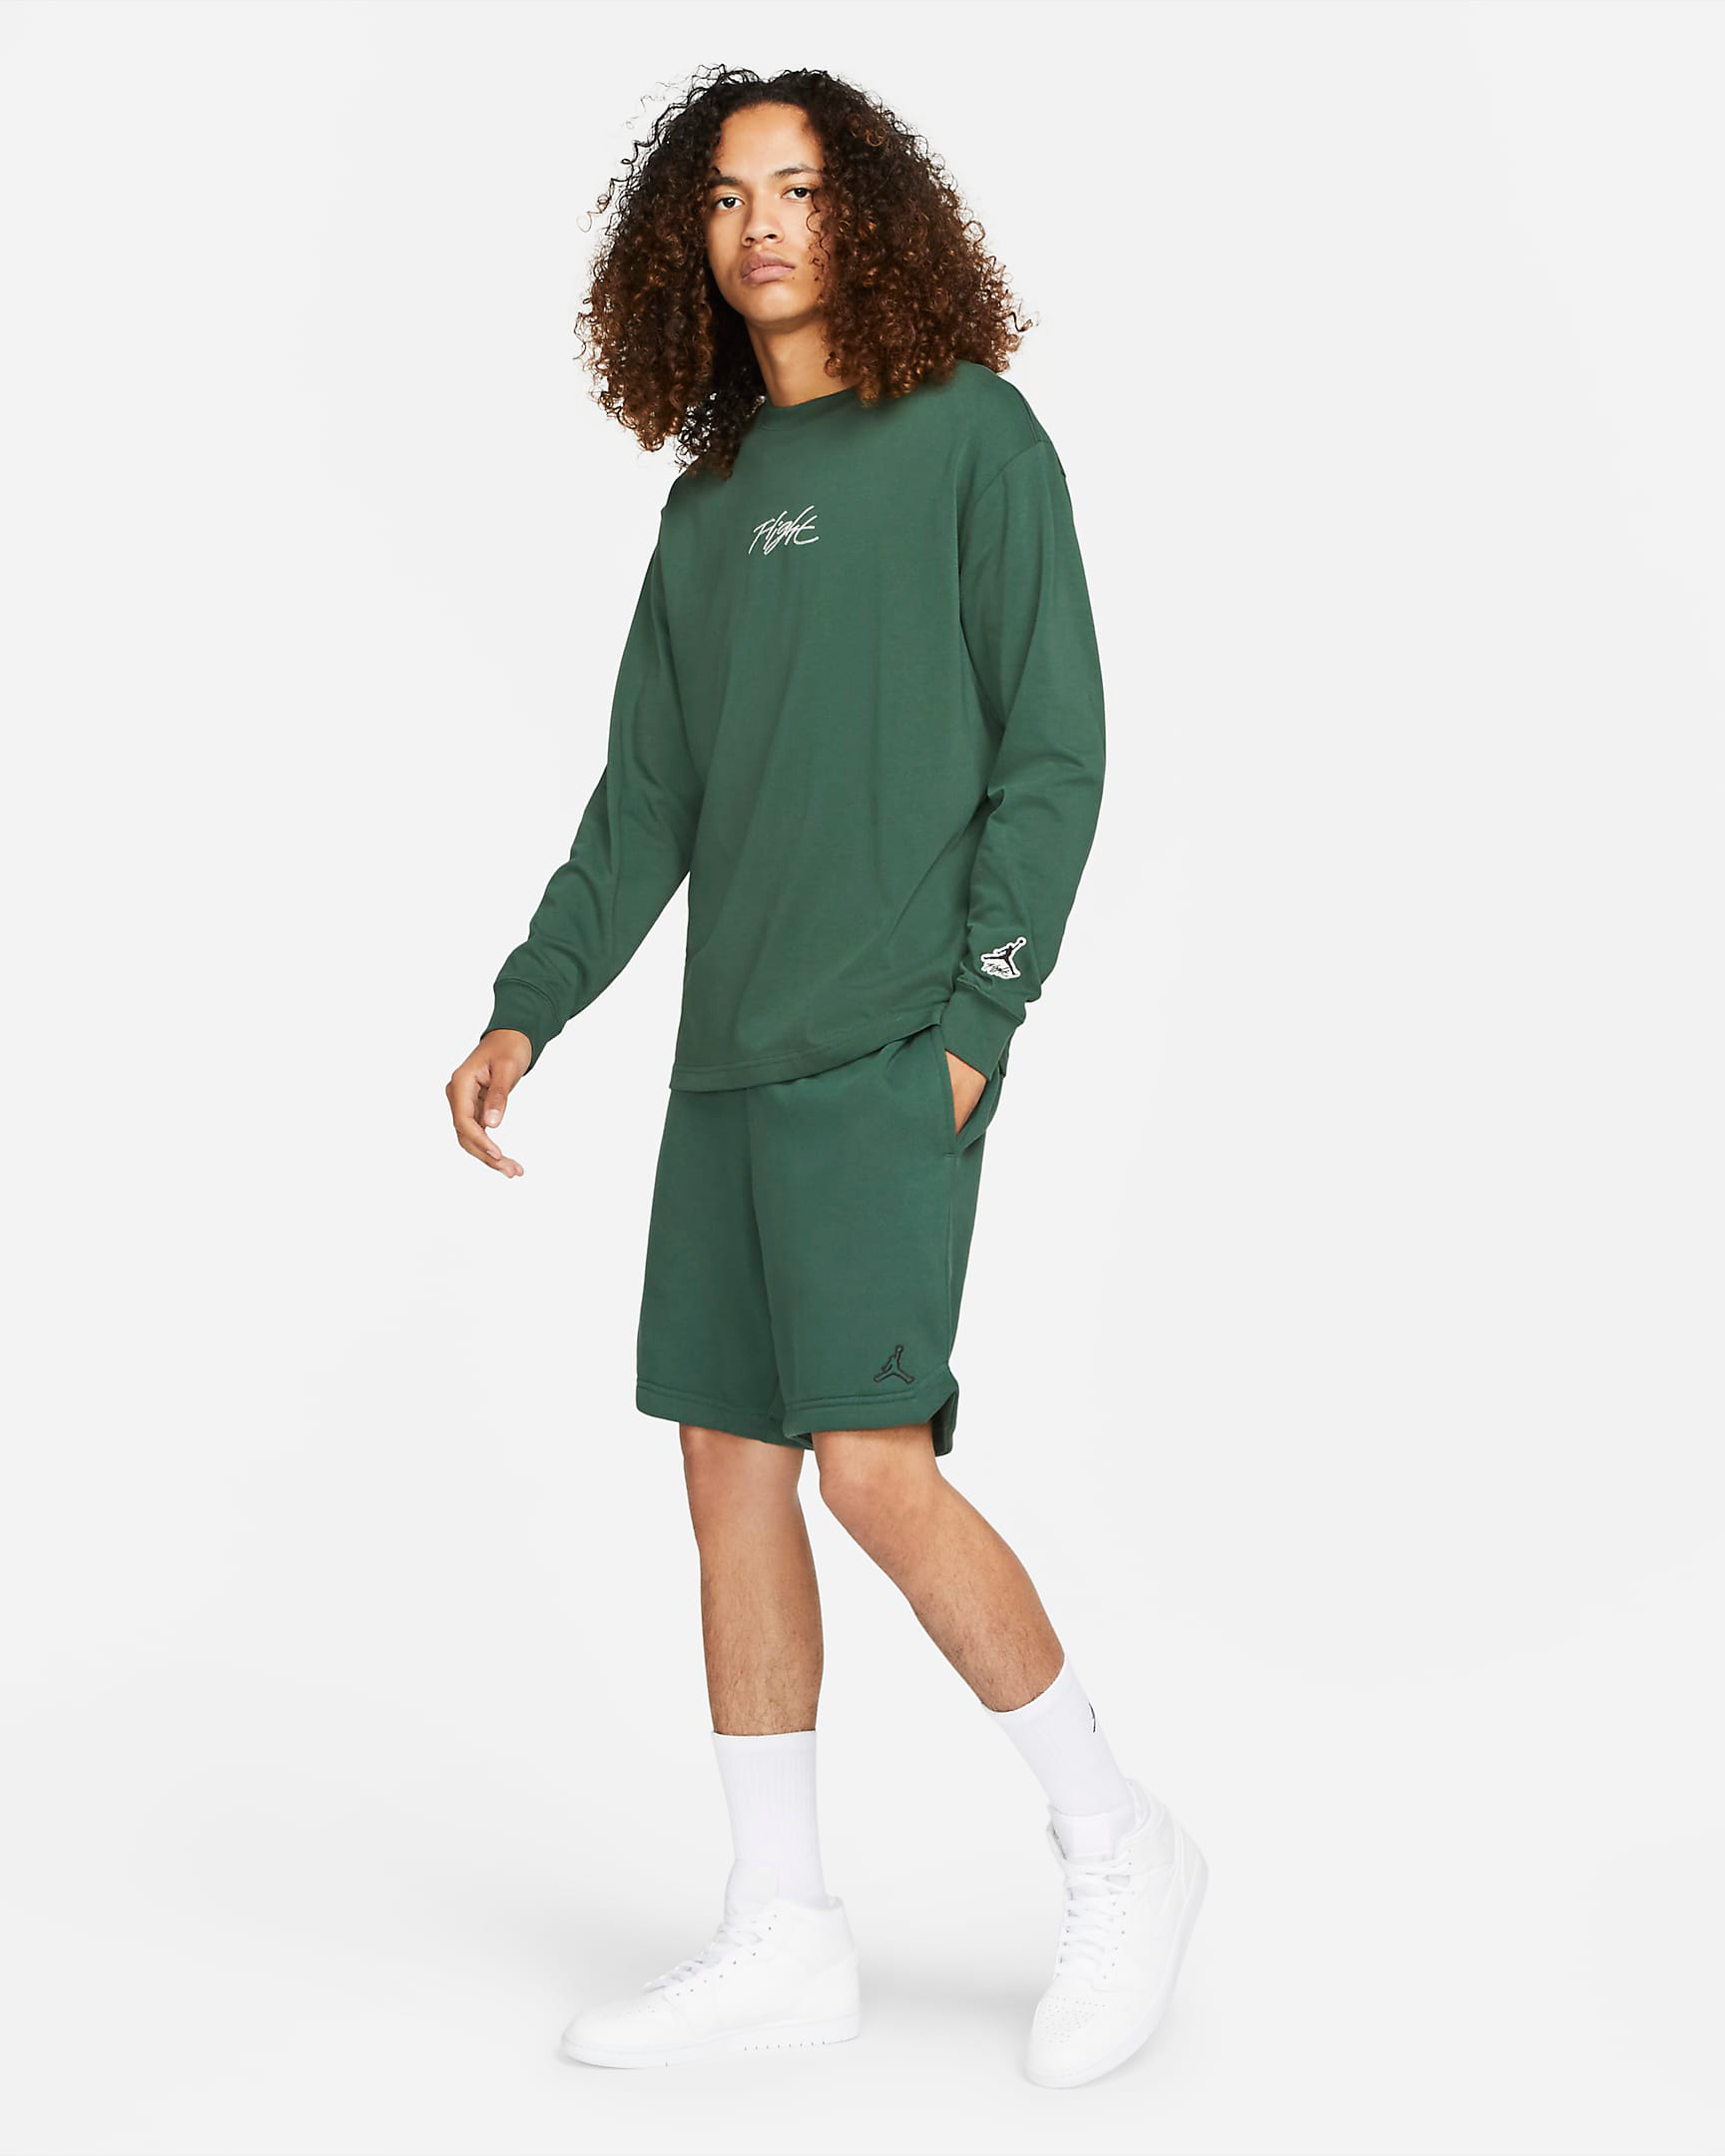 jordan-noble-green-essentials-fleece-shorts-shirt-outfit